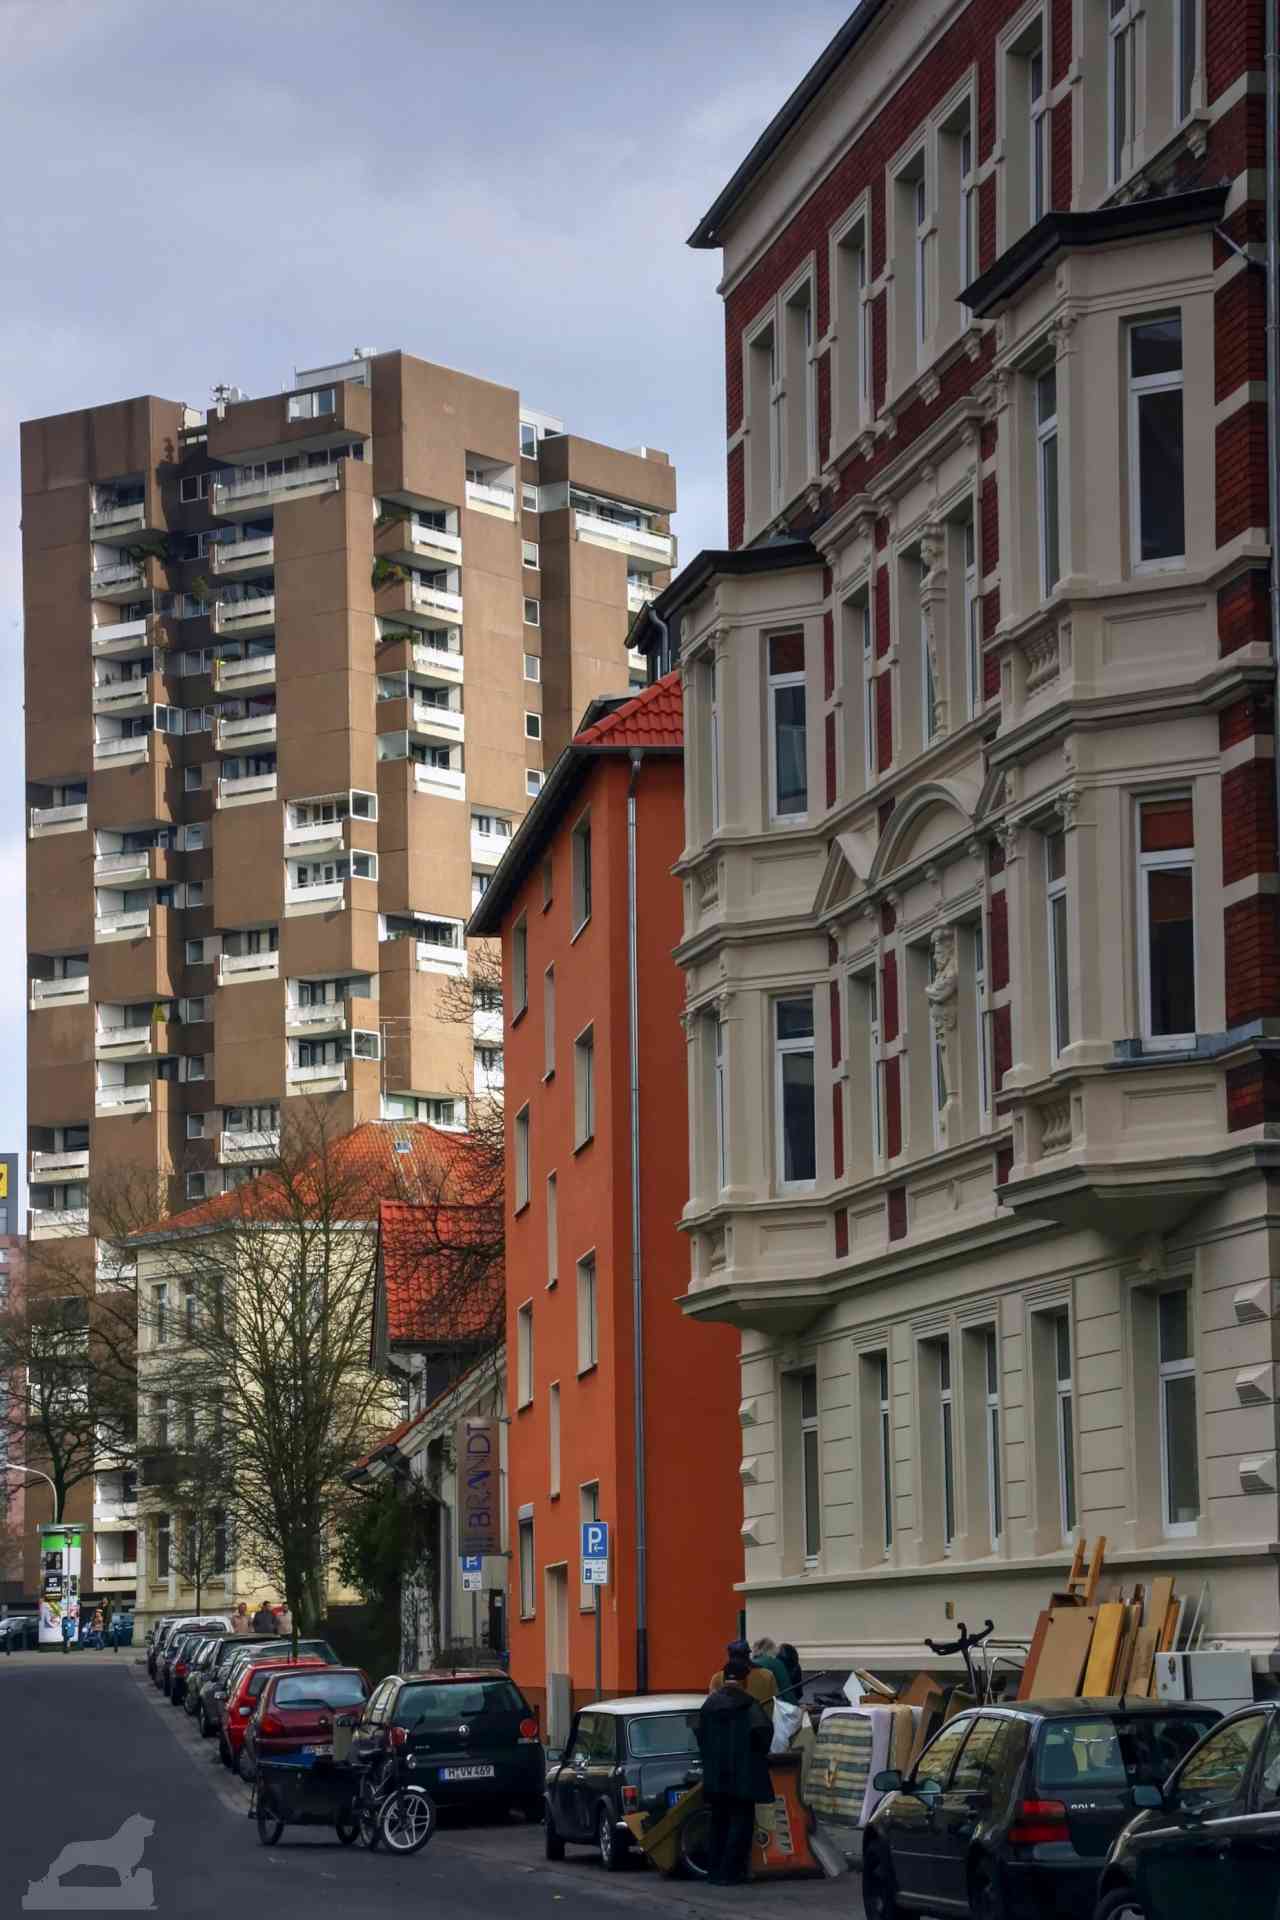 Blick von der Autor-Straße auf ein Iduna-Hochhaus (hier mit der alten braunen Waschbeton-Fassade)